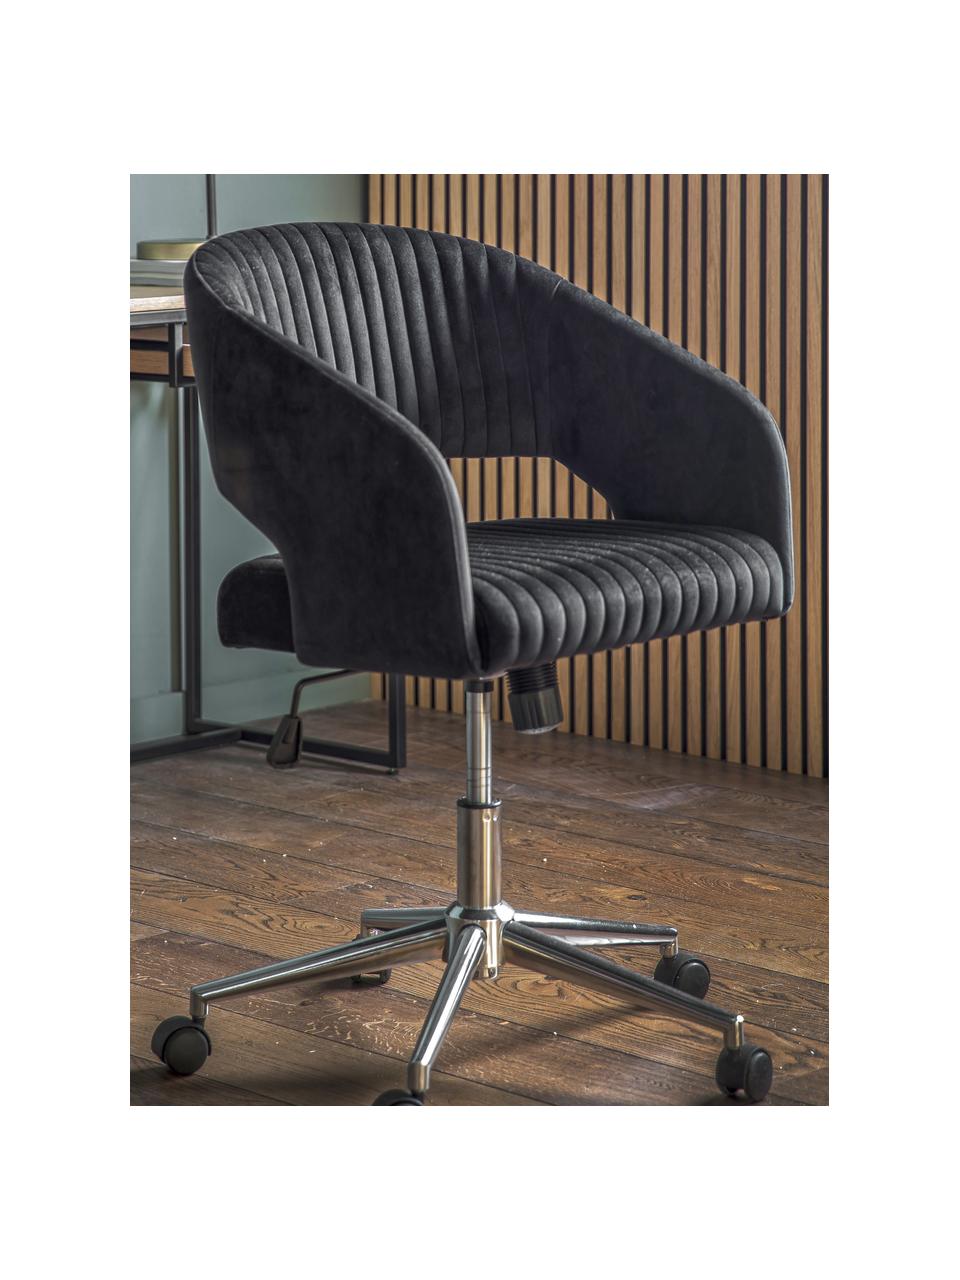 Krzesło biurowe z aksamitu Murray, obrotowe, Tapicerka: aksamit poliestrowy, Nogi: metal galwanizowany, Czarny aksamit, odcienie chromu, S 56 x G 52 cm